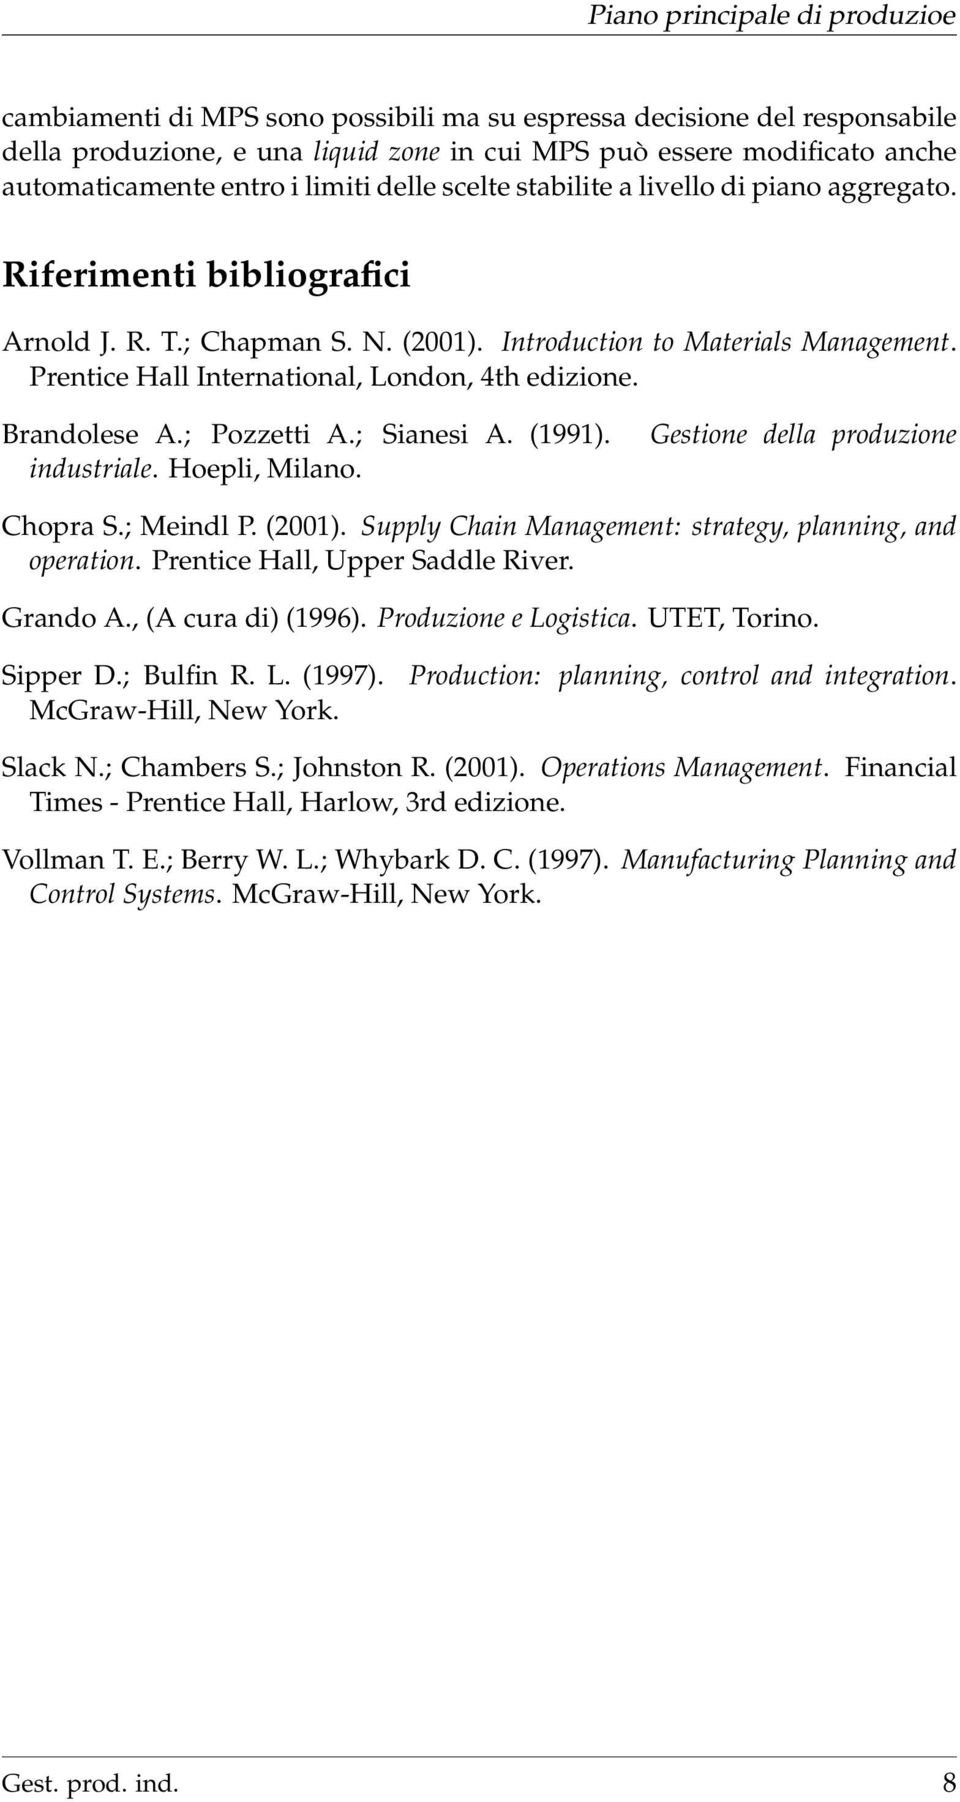 Brandolese A.; Pozzetti A.; Sianesi A. (1991). industriale. Hoepli, Milano. Gestione della produzione Chopra S.; Meindl P. (2001). Supply Chain Management: strategy, planning, and operation.